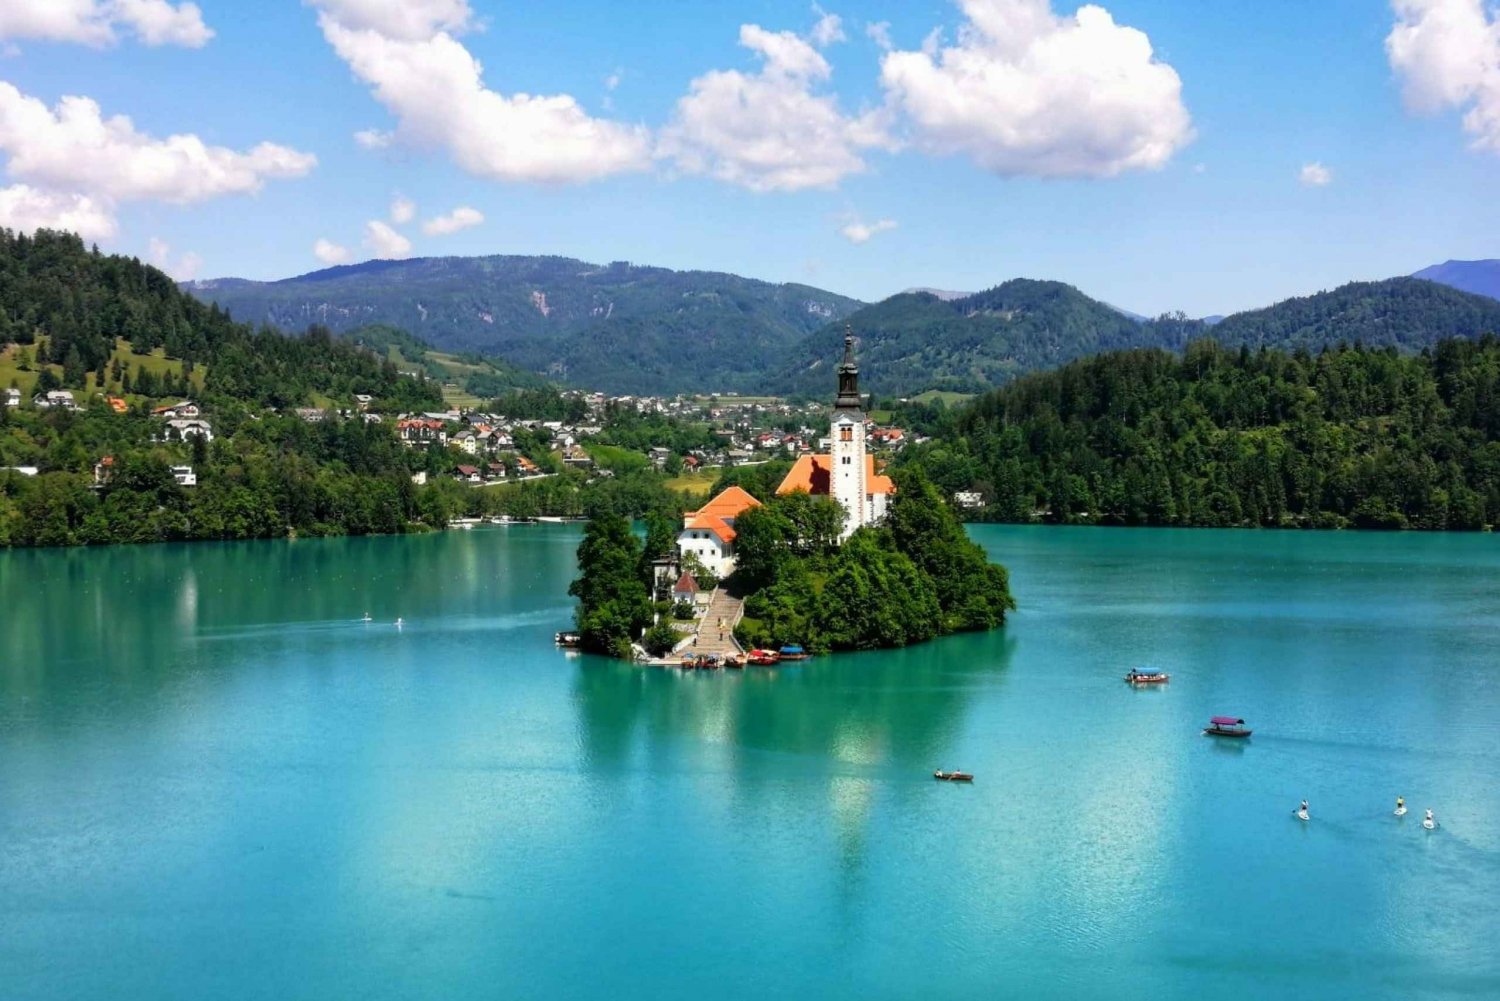 Da Lubiana: Lago di Bled, Grotte di Postumia e Castello di Predjama